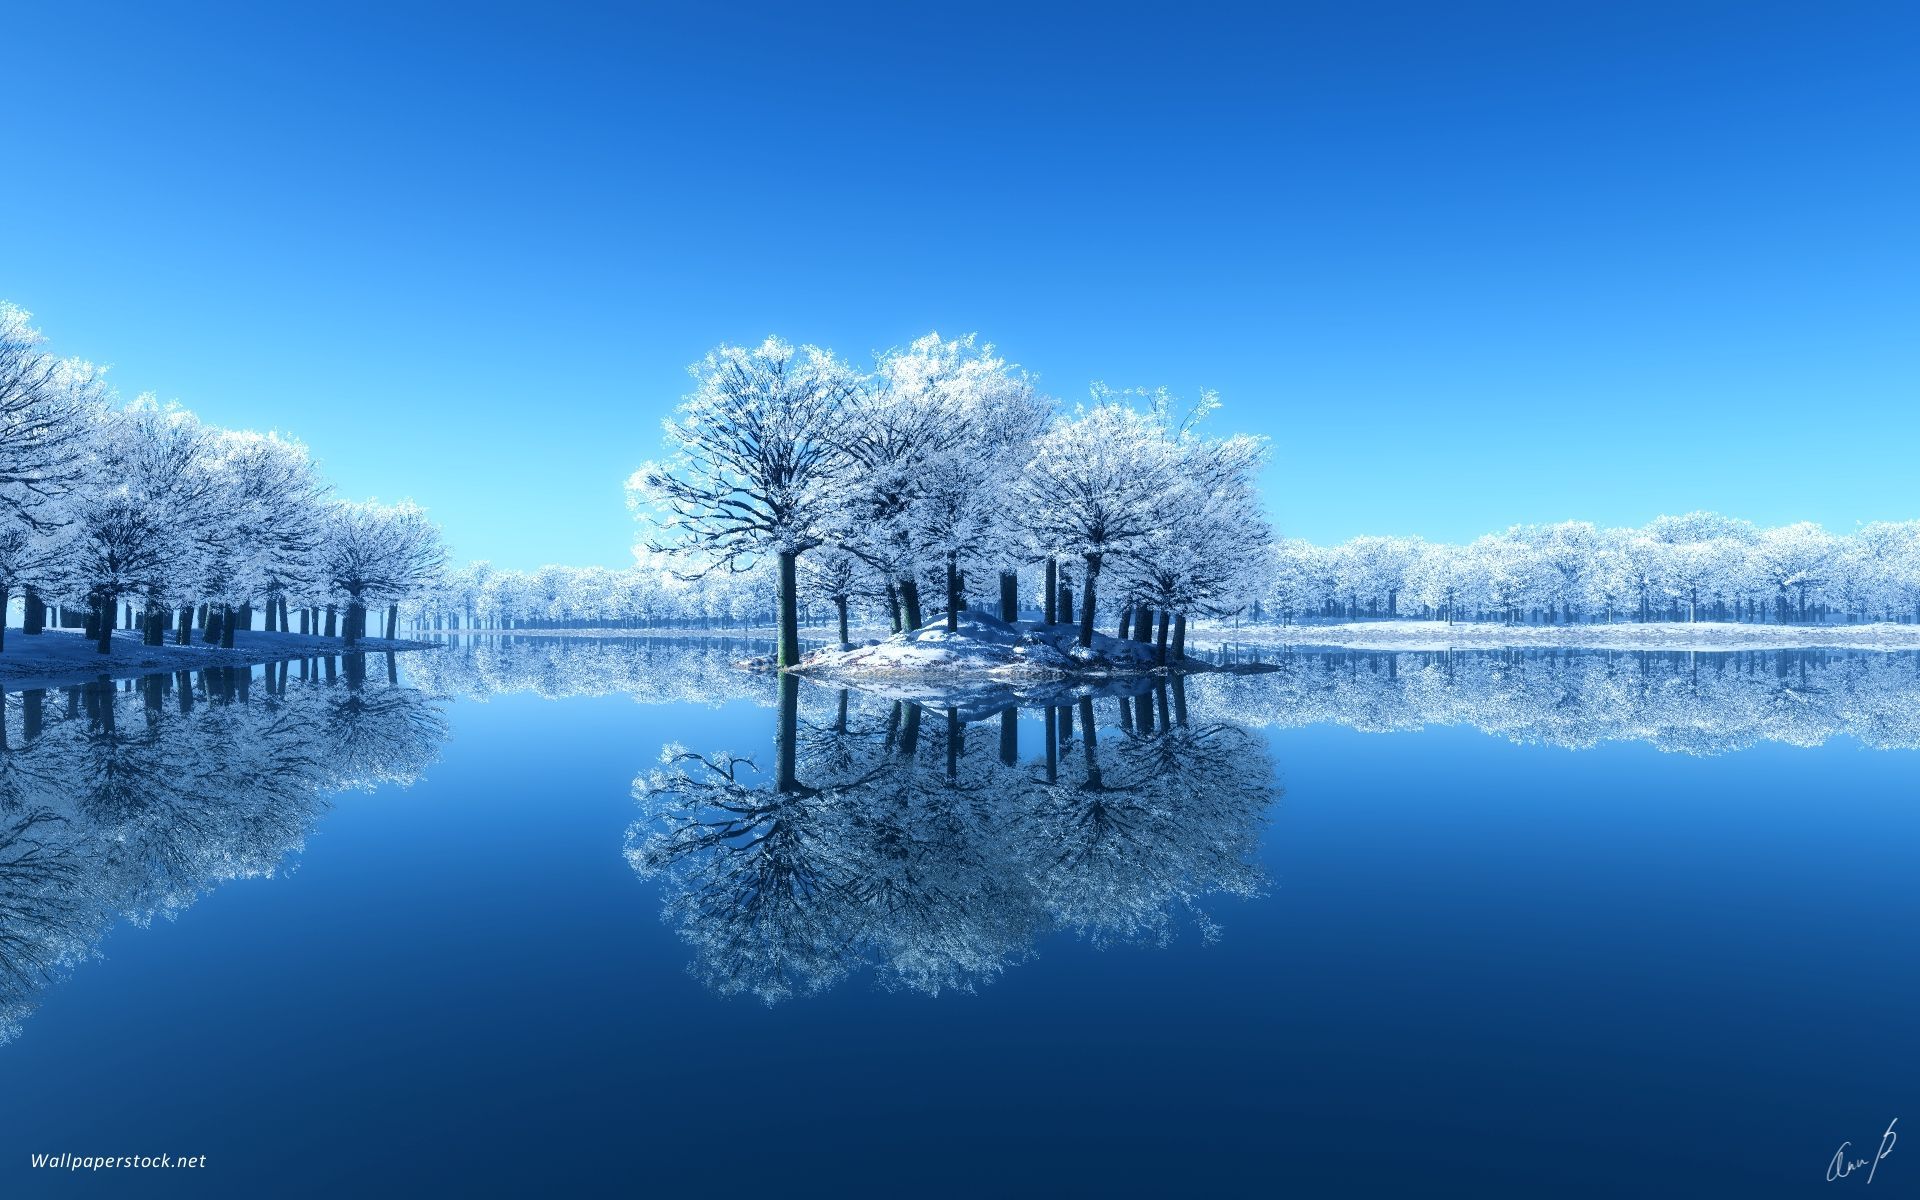 Beautiful Winter Scenes. Beautiful Winter Scene Wallpaper. Winter wallpaper desktop, Winter wallpaper, Beautiful winter scenes